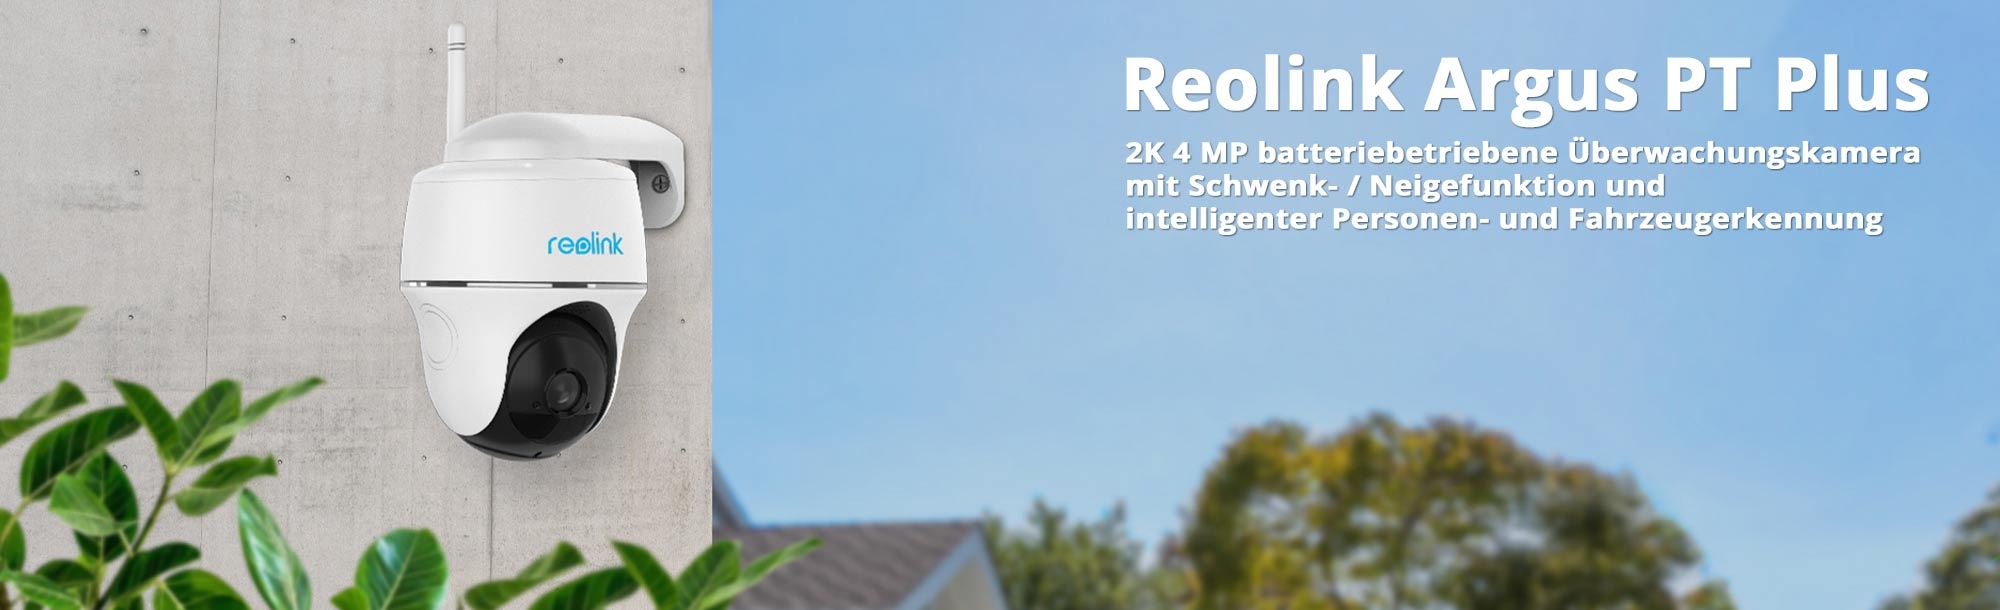 Reolink Argus PT Plus 100% drahtlose WLAN IP 4 MP Überwachungskamera mit  Akku, Schwenk- und Neigefunktion und intelligenter Personen- und  Fahrzeugerkennung, inkl. 64 GB MicroSD-Karte 6975253980444